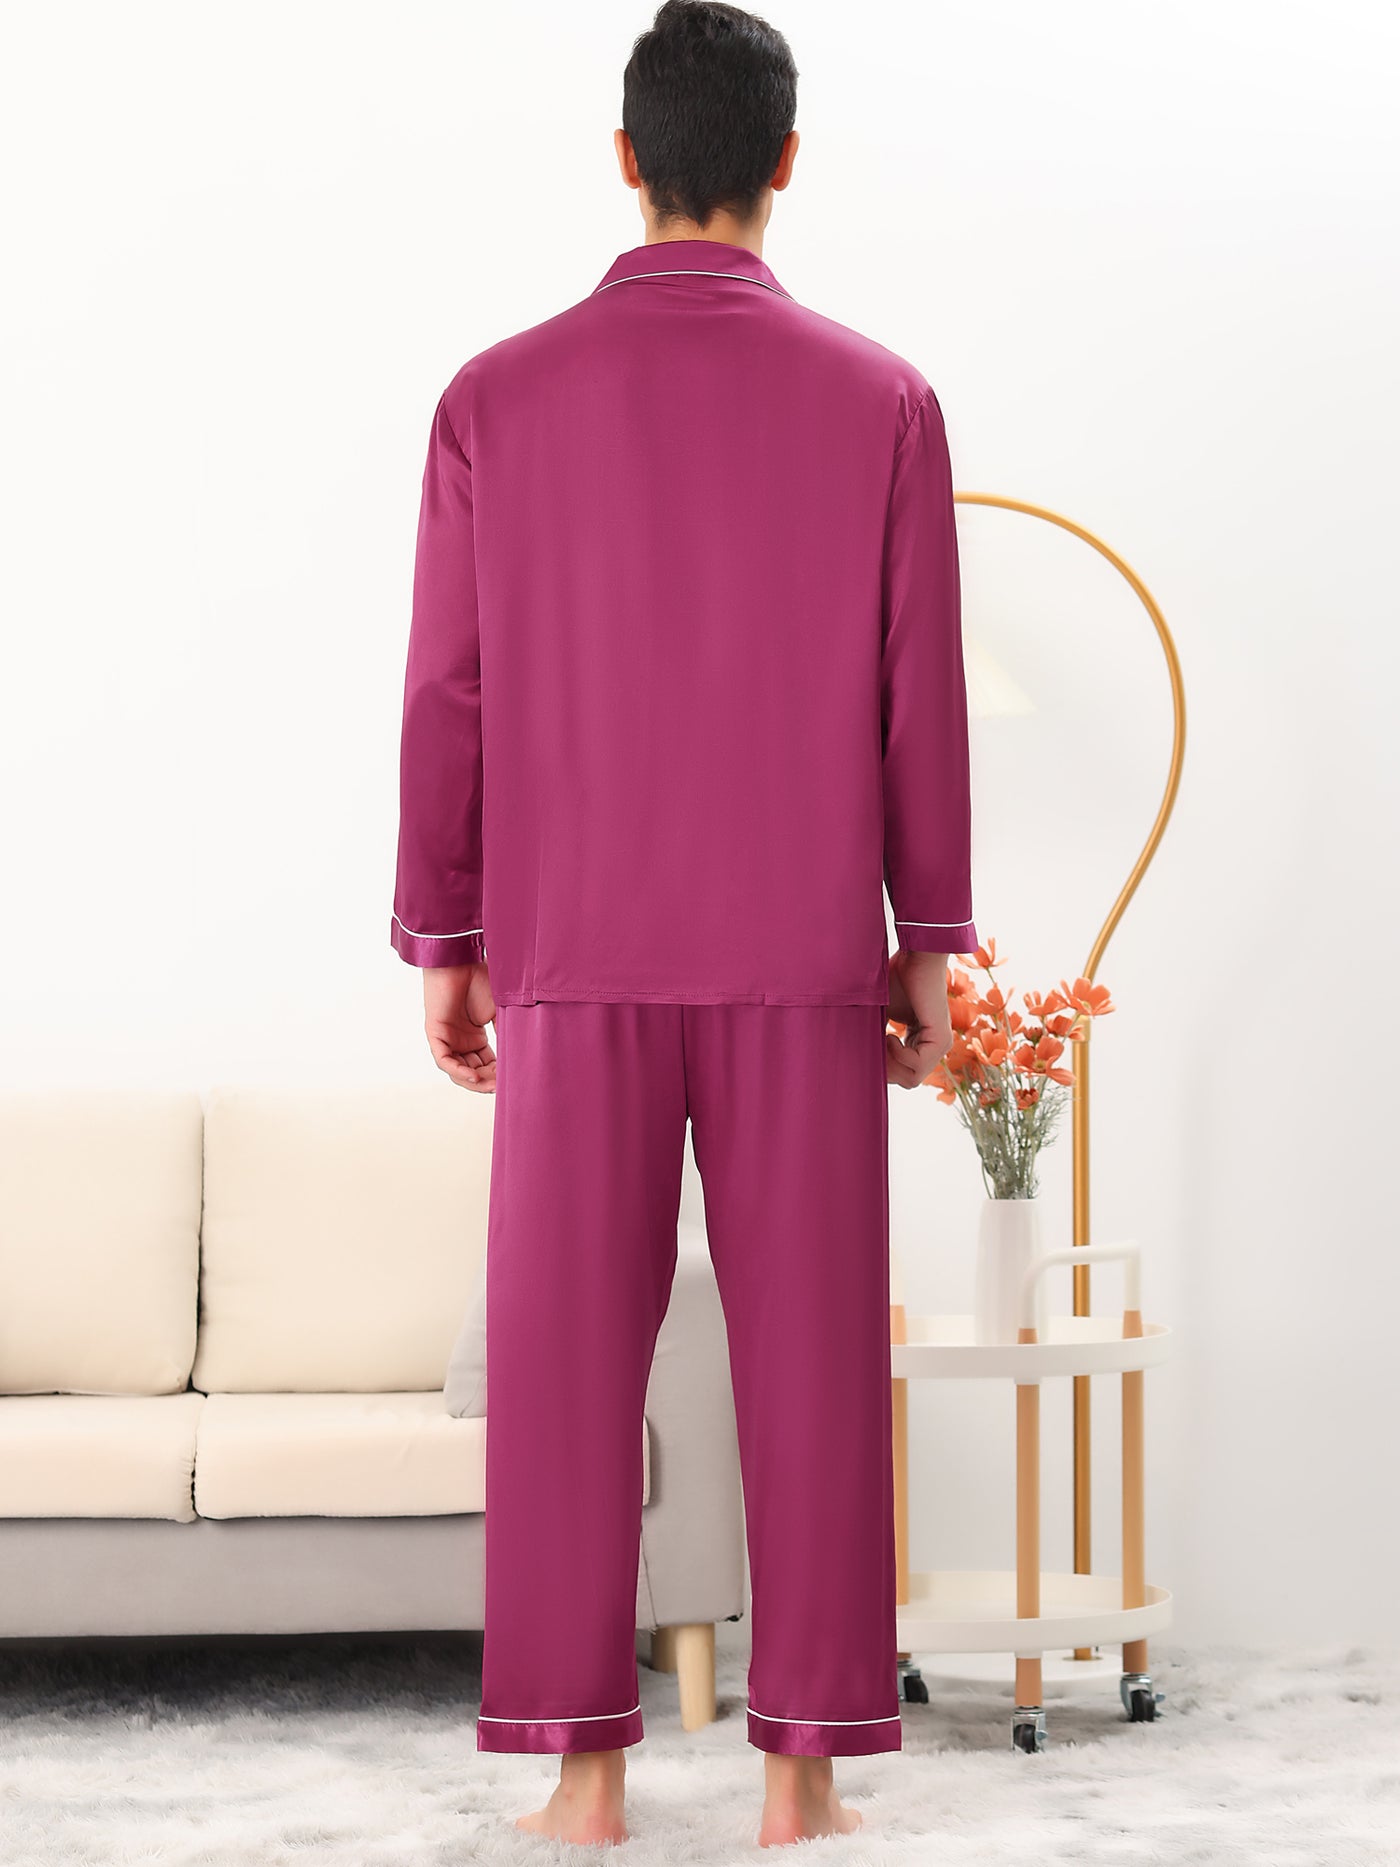 Bublédon Men's Satin Pajama Set Long Sleeves Shirt Pants Sleepwear Loungewear Pjs